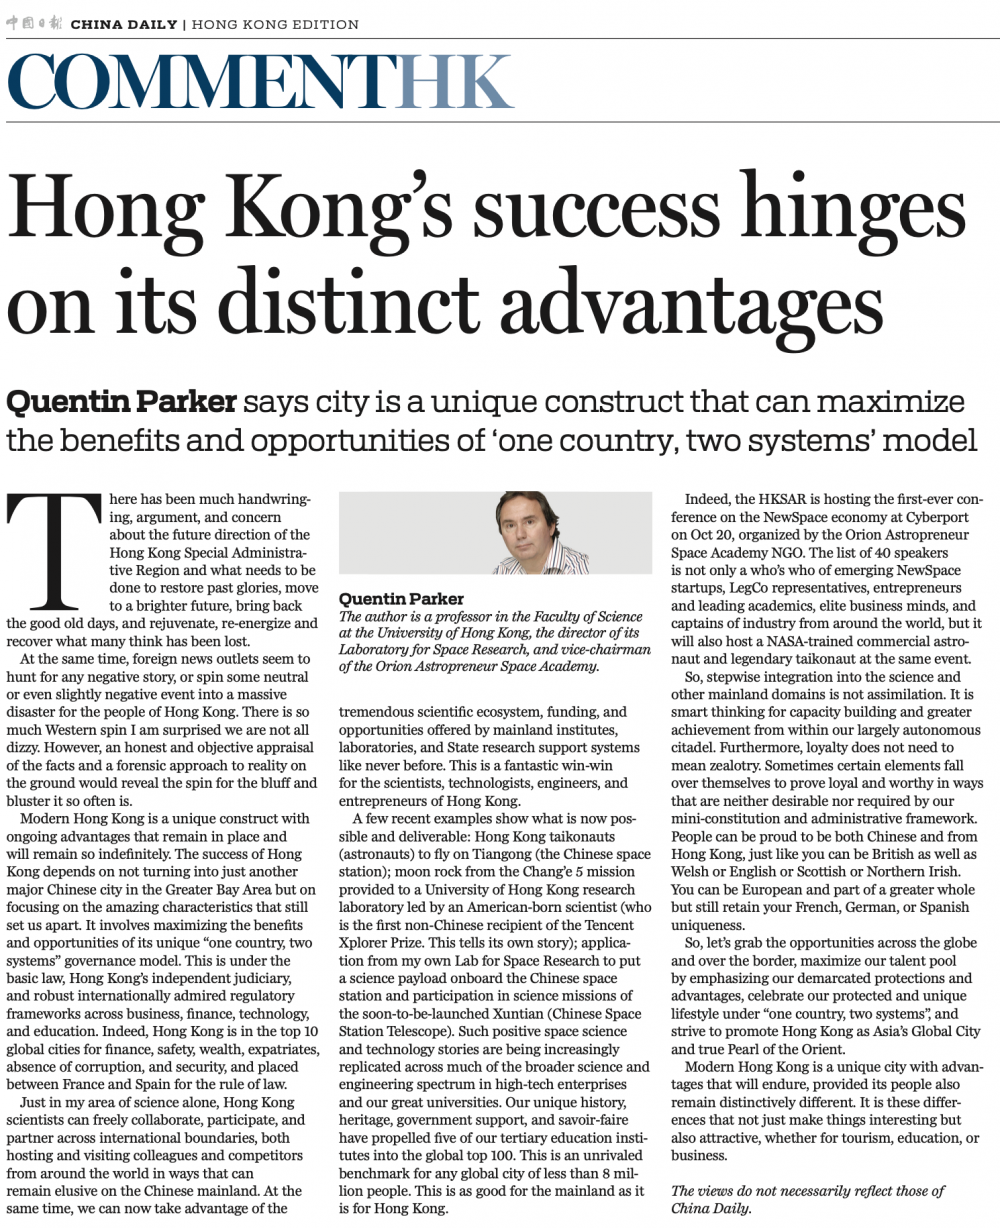 《中国日报》香港的成功取决于其独特的优势